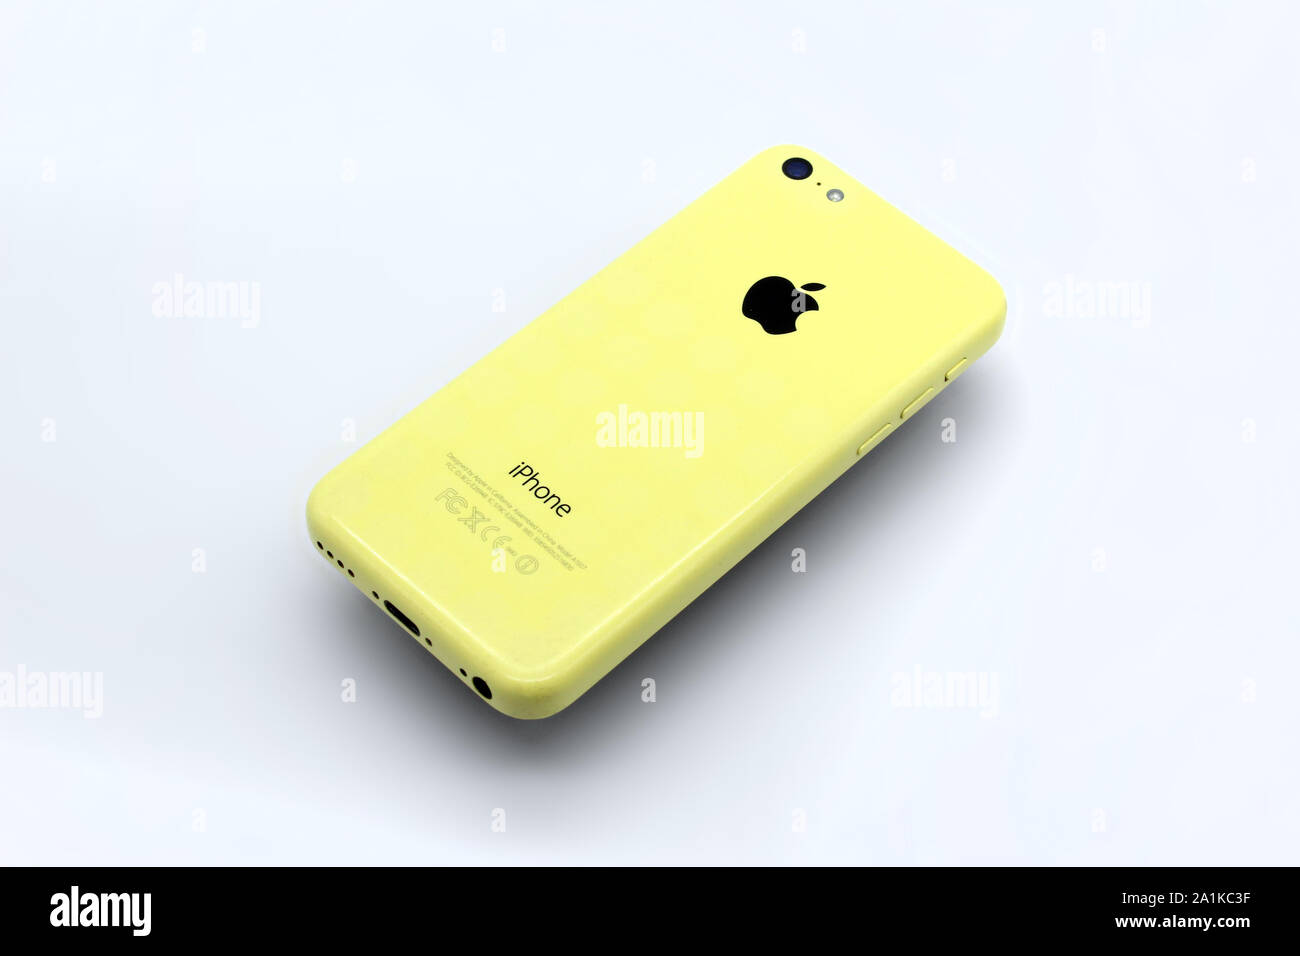 iPhone SE 5c là sản phẩm đình đám của Apple với nhiều tính năng hấp dẫn và màu sắc tươi sáng. Nếu bạn đang tìm kiếm một chiếc điện thoại lý tưởng để thể hiện phong cách và cá tính của mình, thì hình ảnh liên quan chắc chắn sẽ khiến bạn có nhiều lựa chọn hơn. 